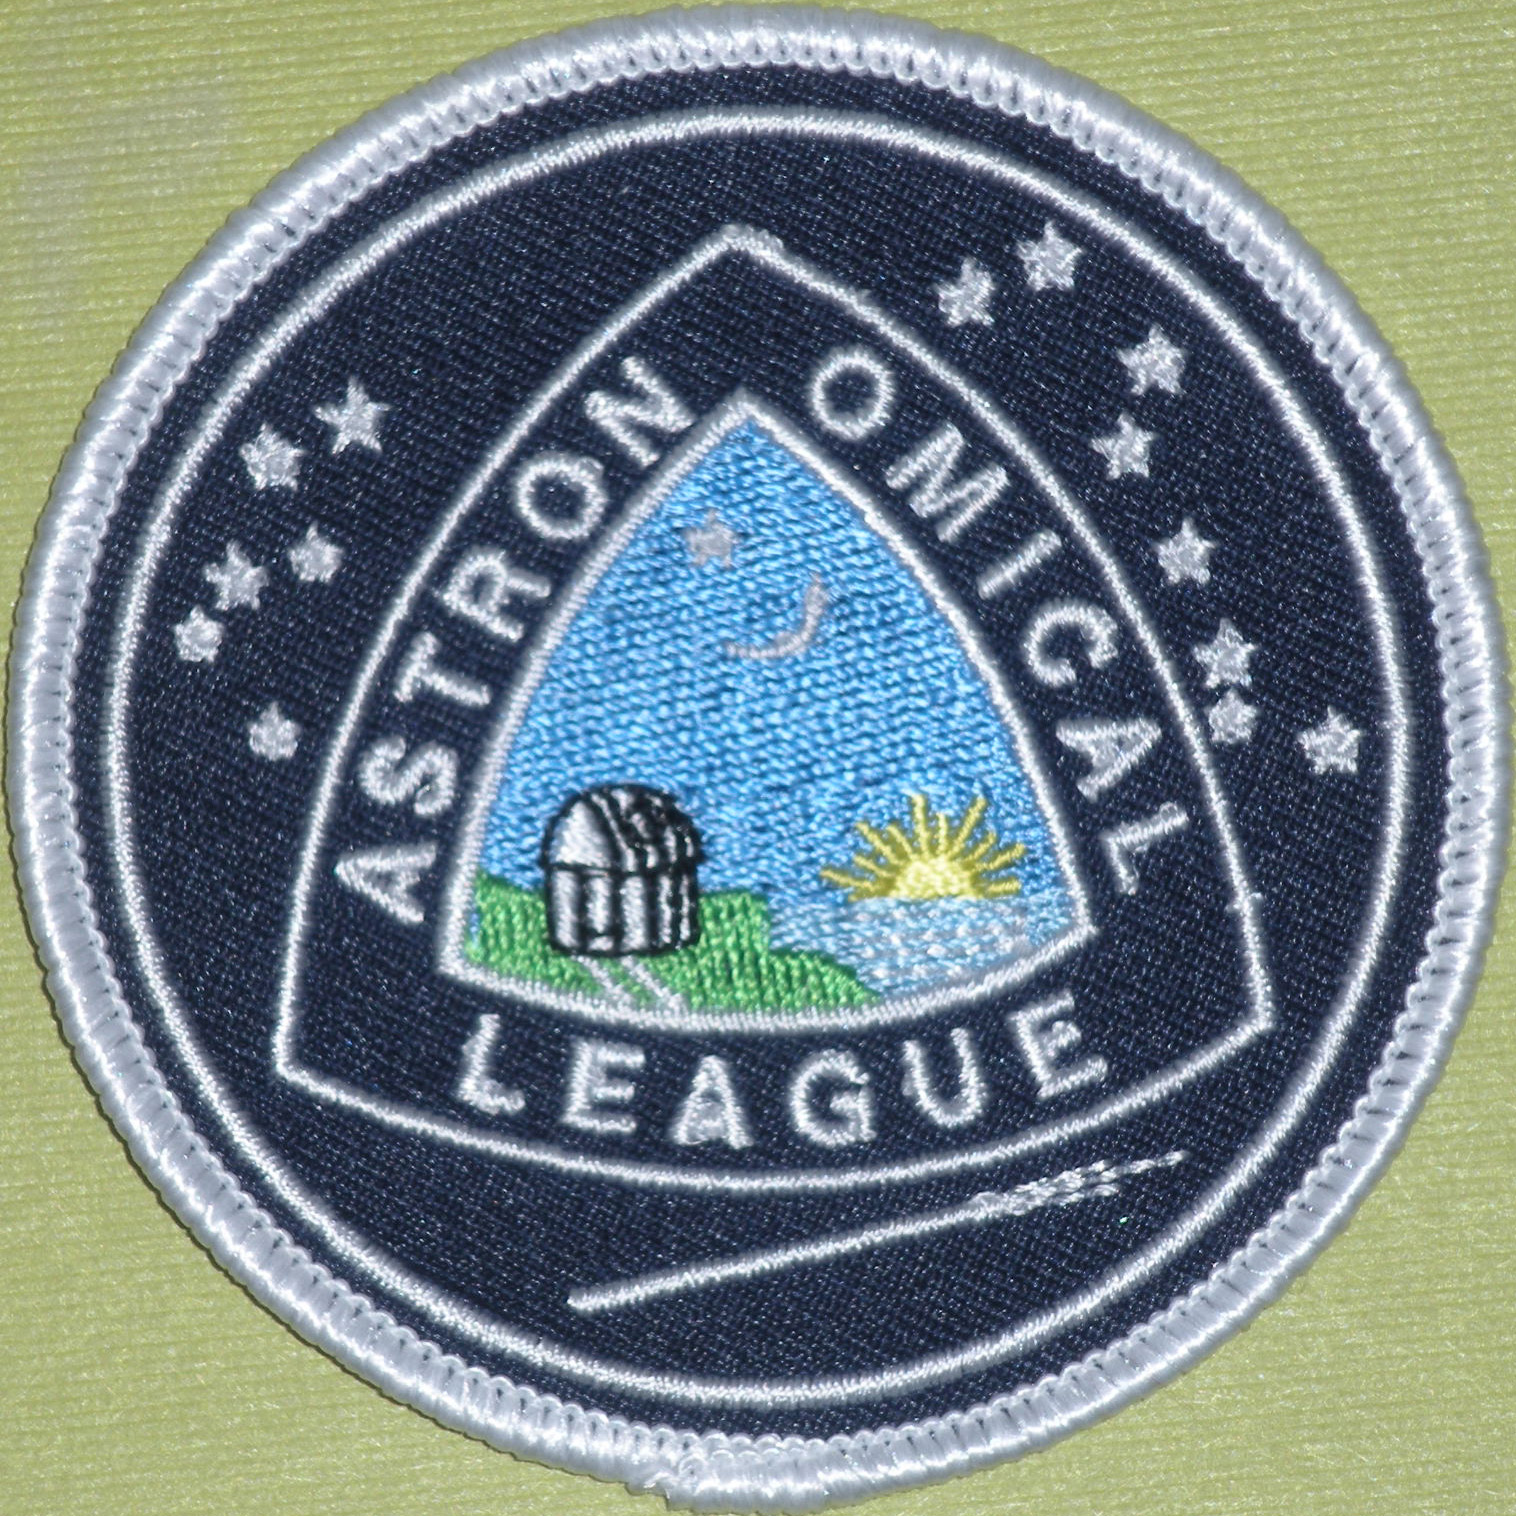 Astronomical League Cloth Patch - 4 color